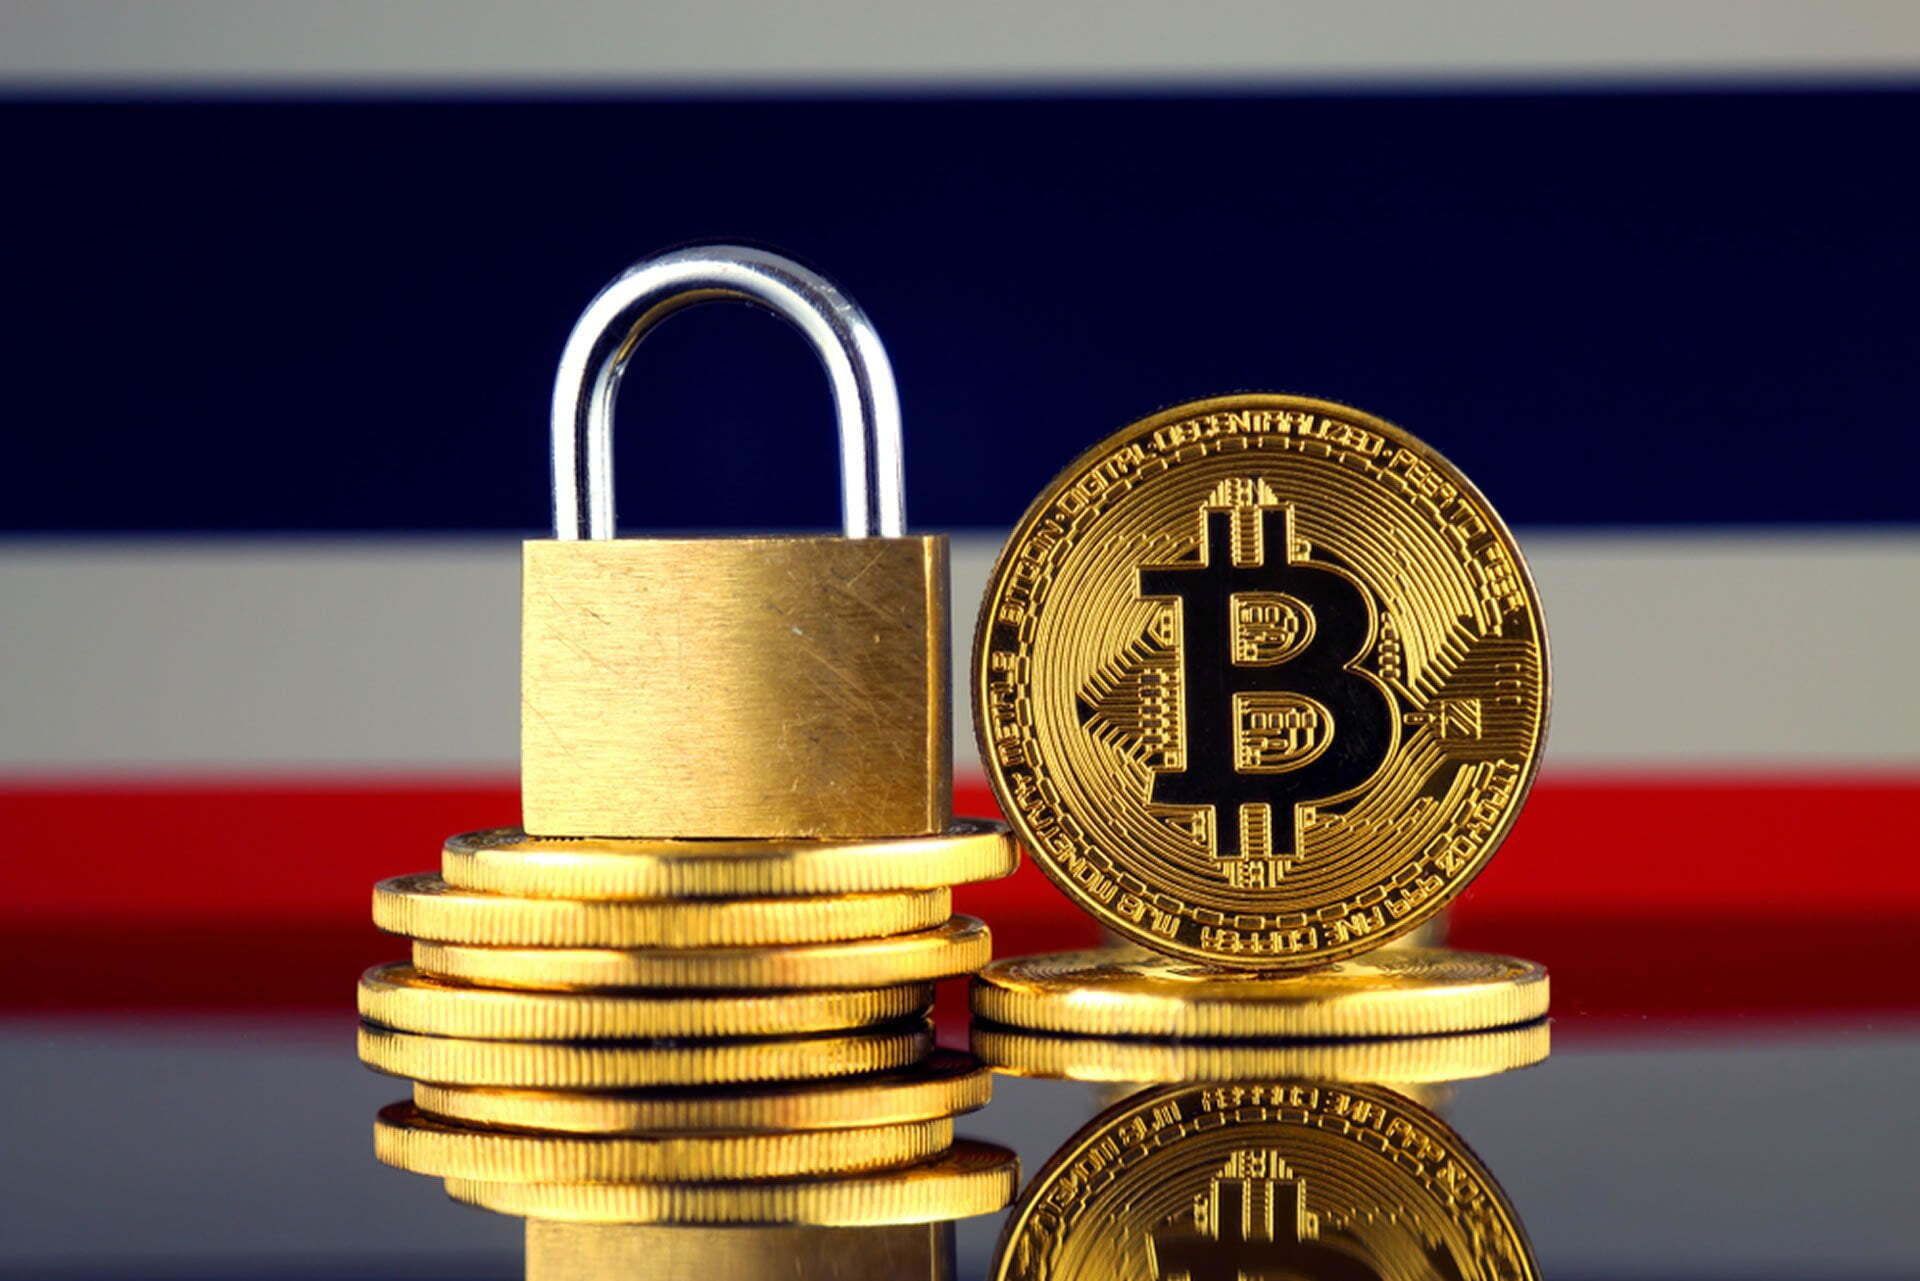 Thái Lan bất ngờ cấm sử dụng tiền mã hóa trong thanh toán - Liệu Bitcoin (BTC) sẽ trụ vững?